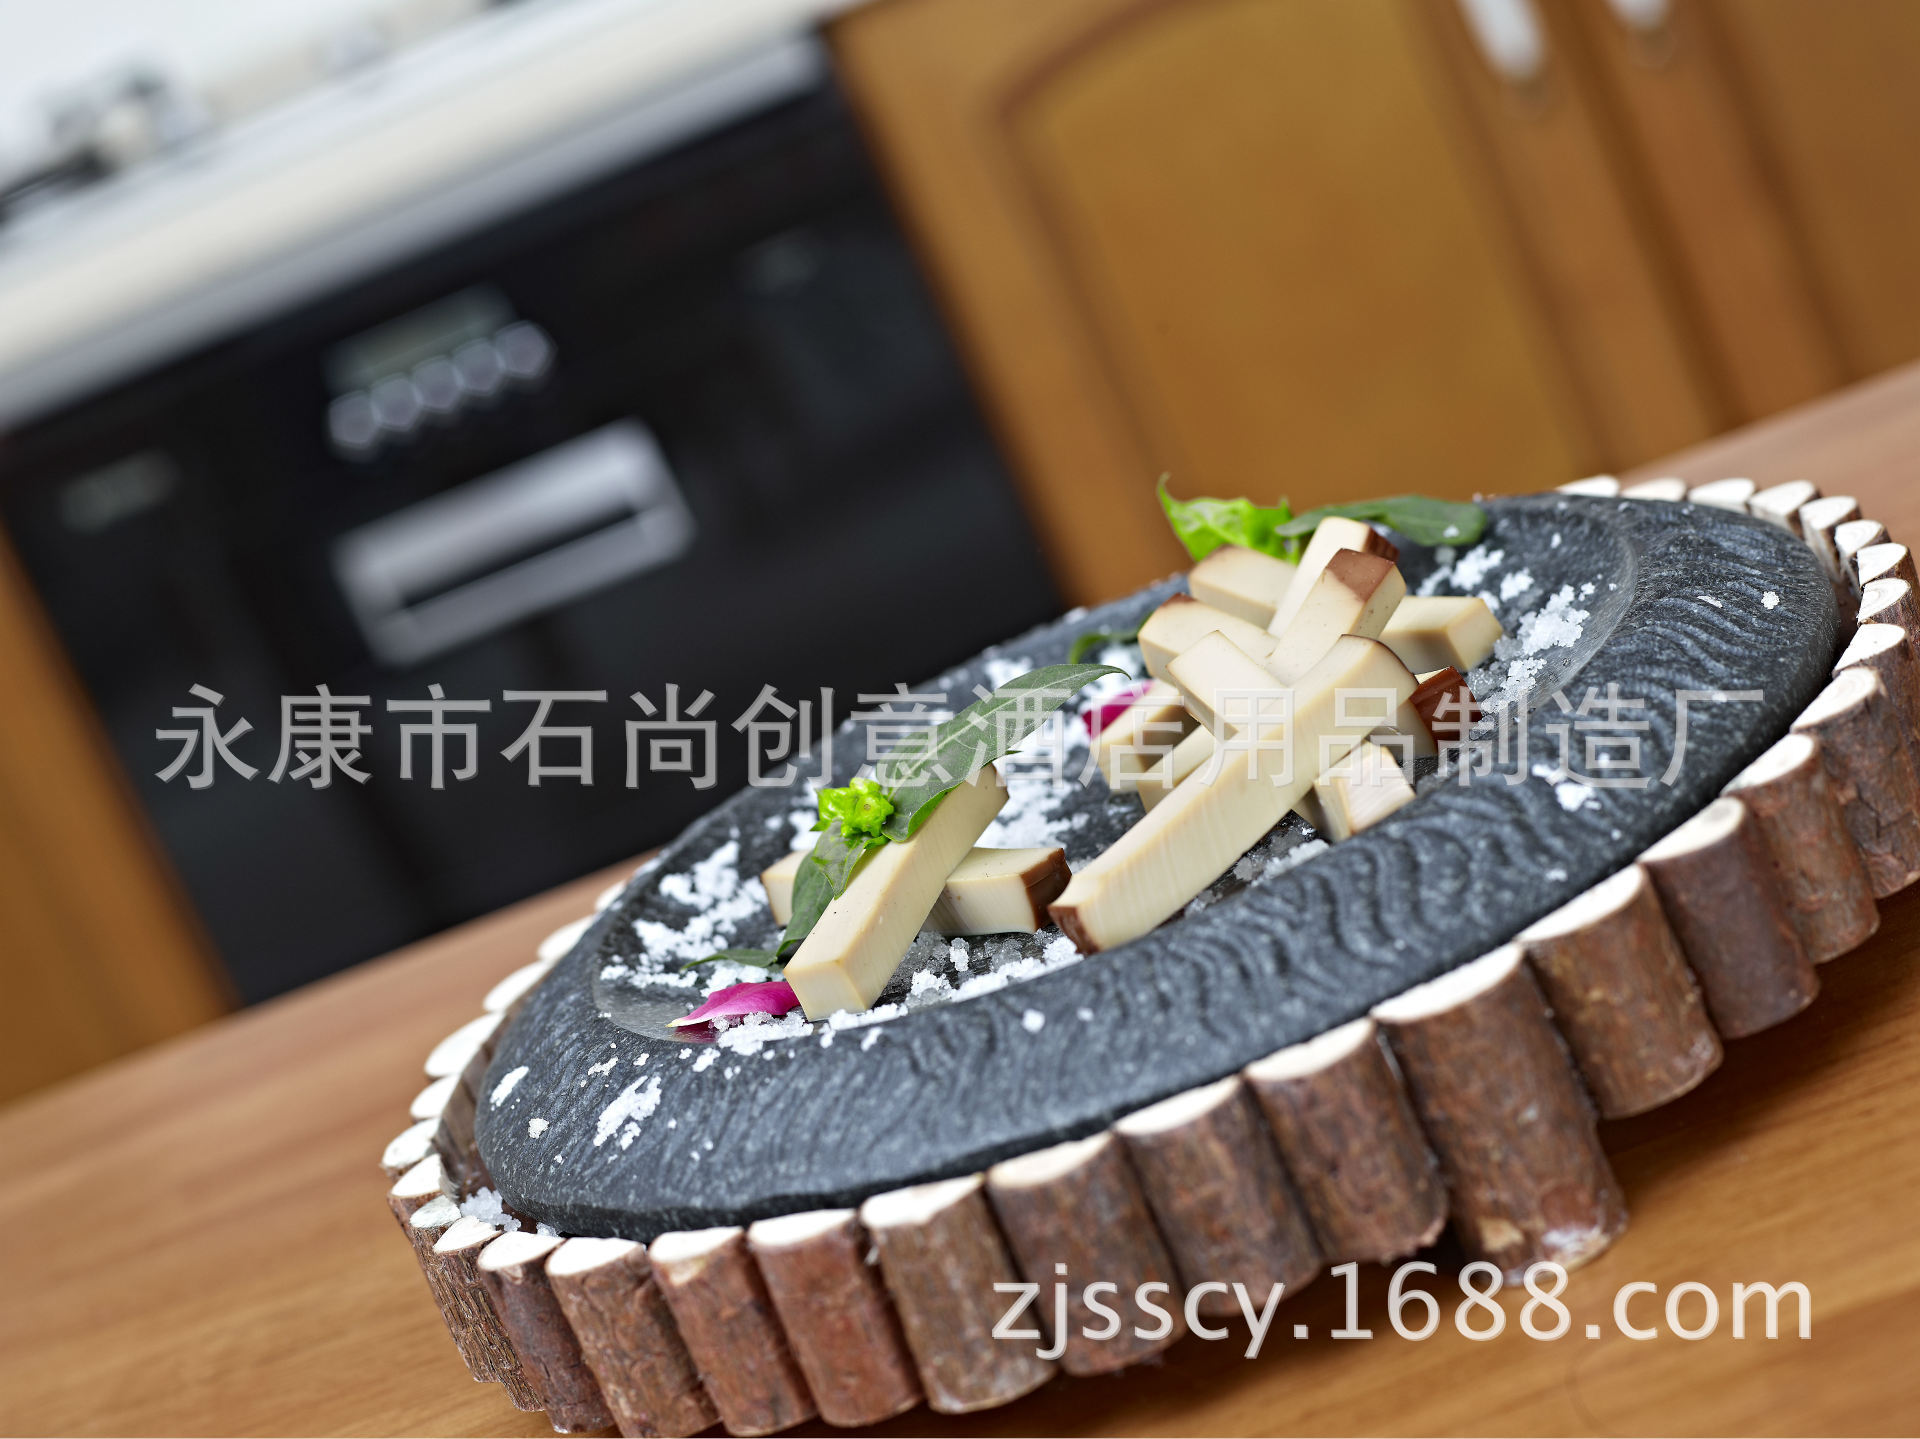 【槟岛火锅】石头锅 Stonepot：用石头煮火锅!!? 吃中国料理!? |食在好玩 - 美食旅游部落格 Food & Travel Blog